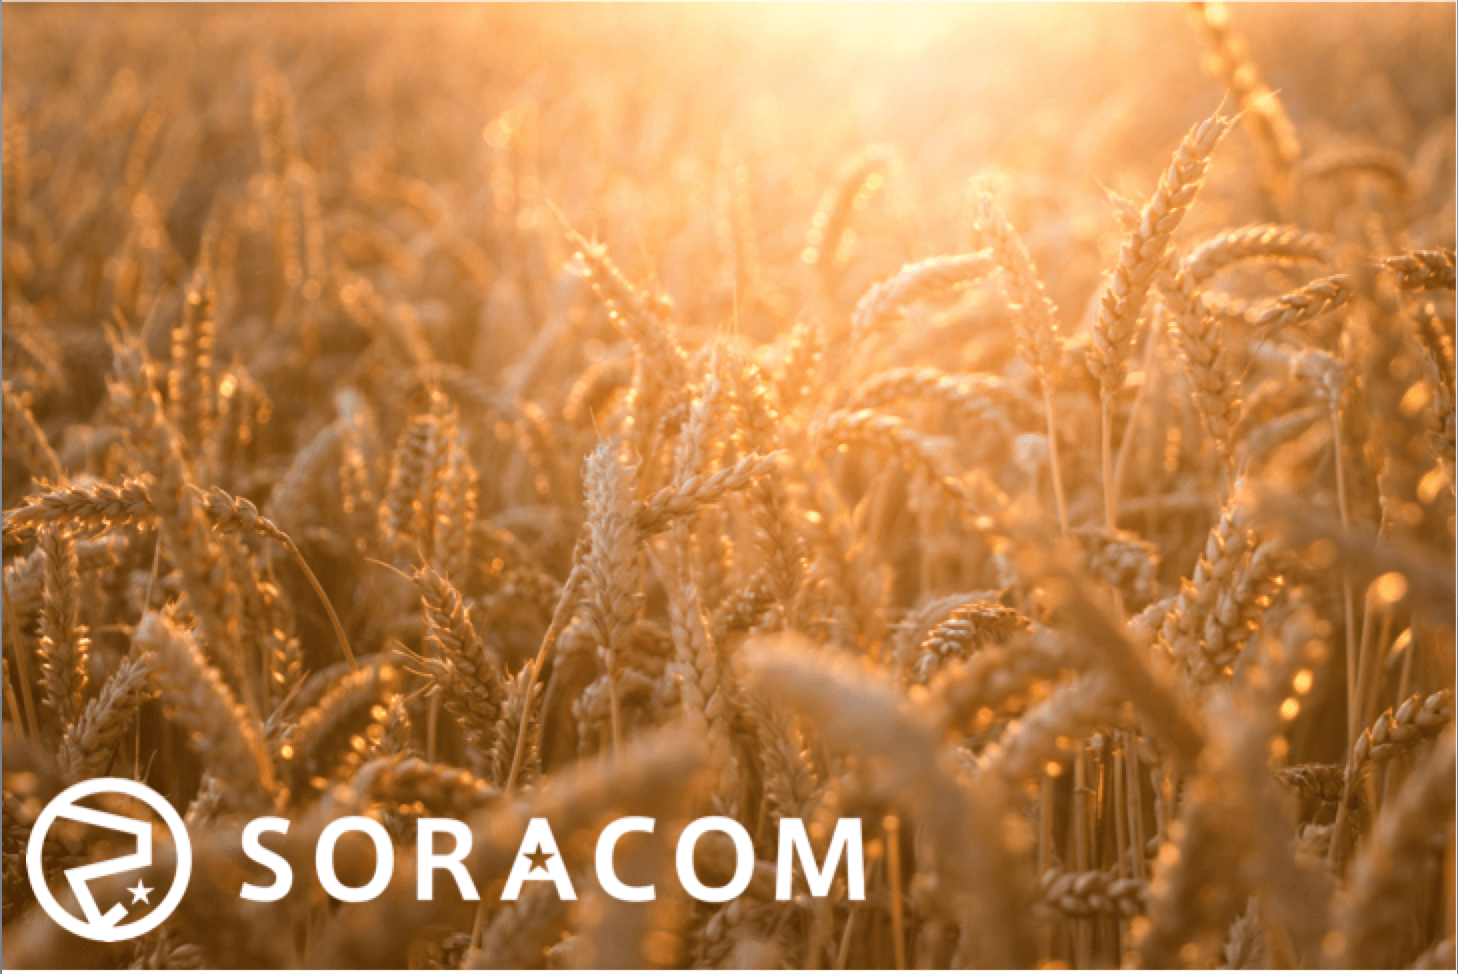 SORACOM Air, SORACOM Beam… What comes next?